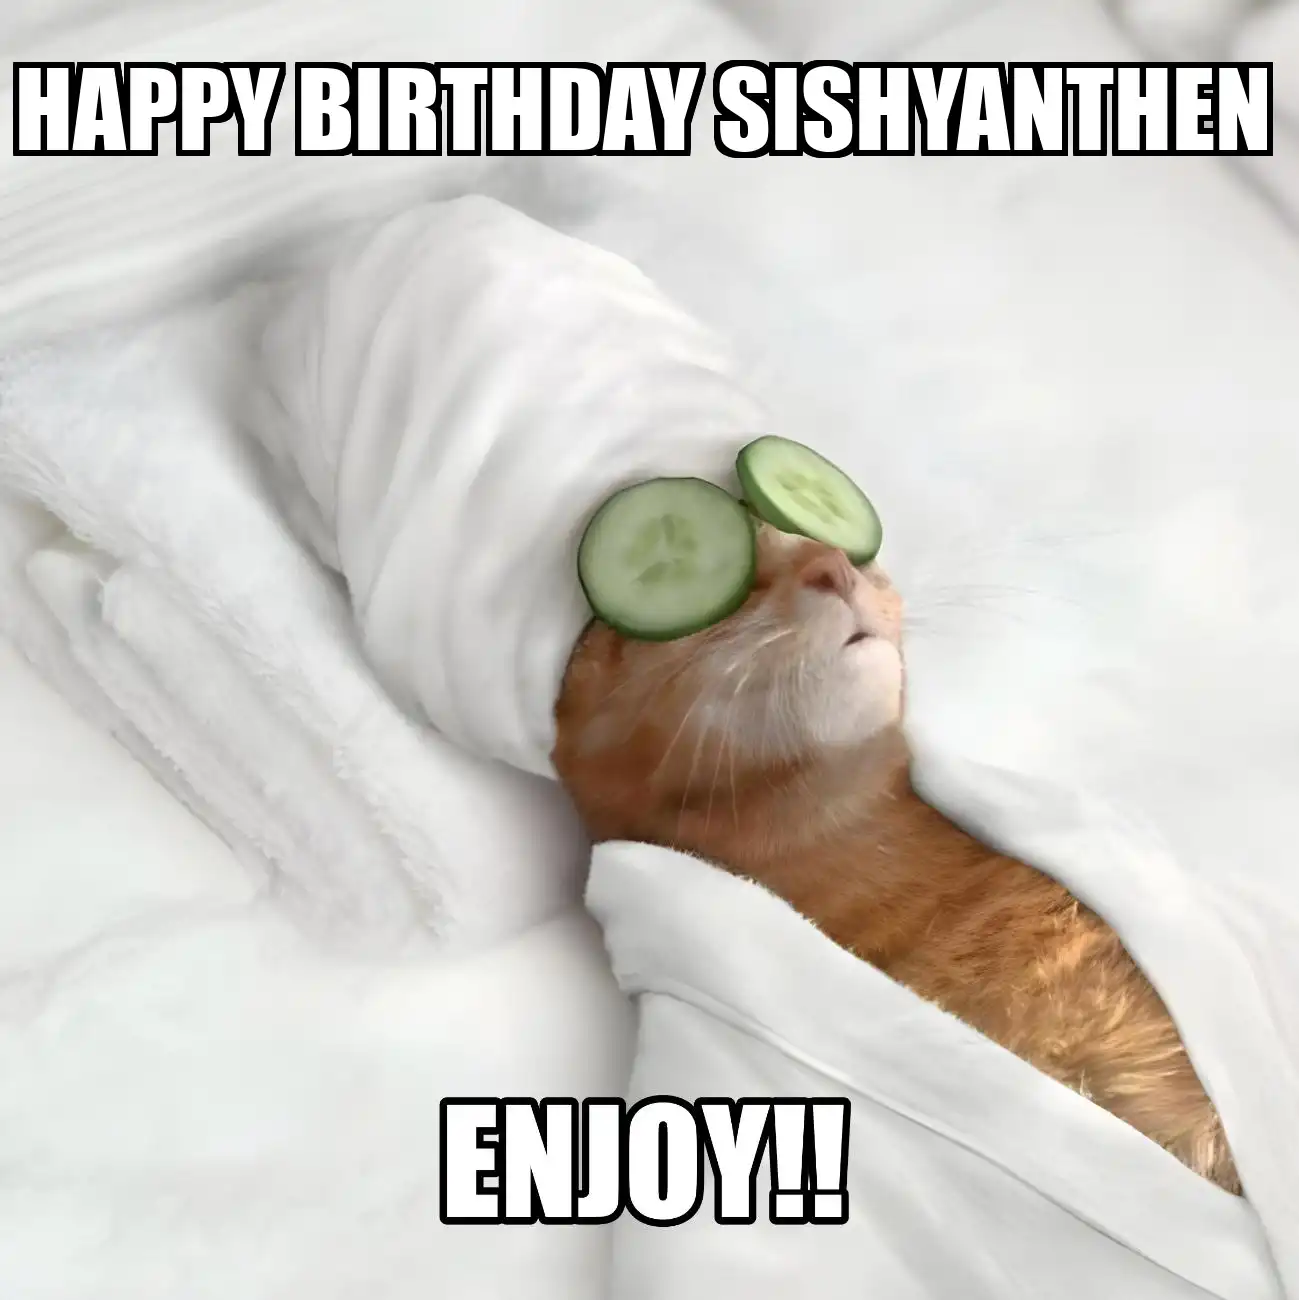 Happy Birthday Sishyanthen Enjoy Cat Meme